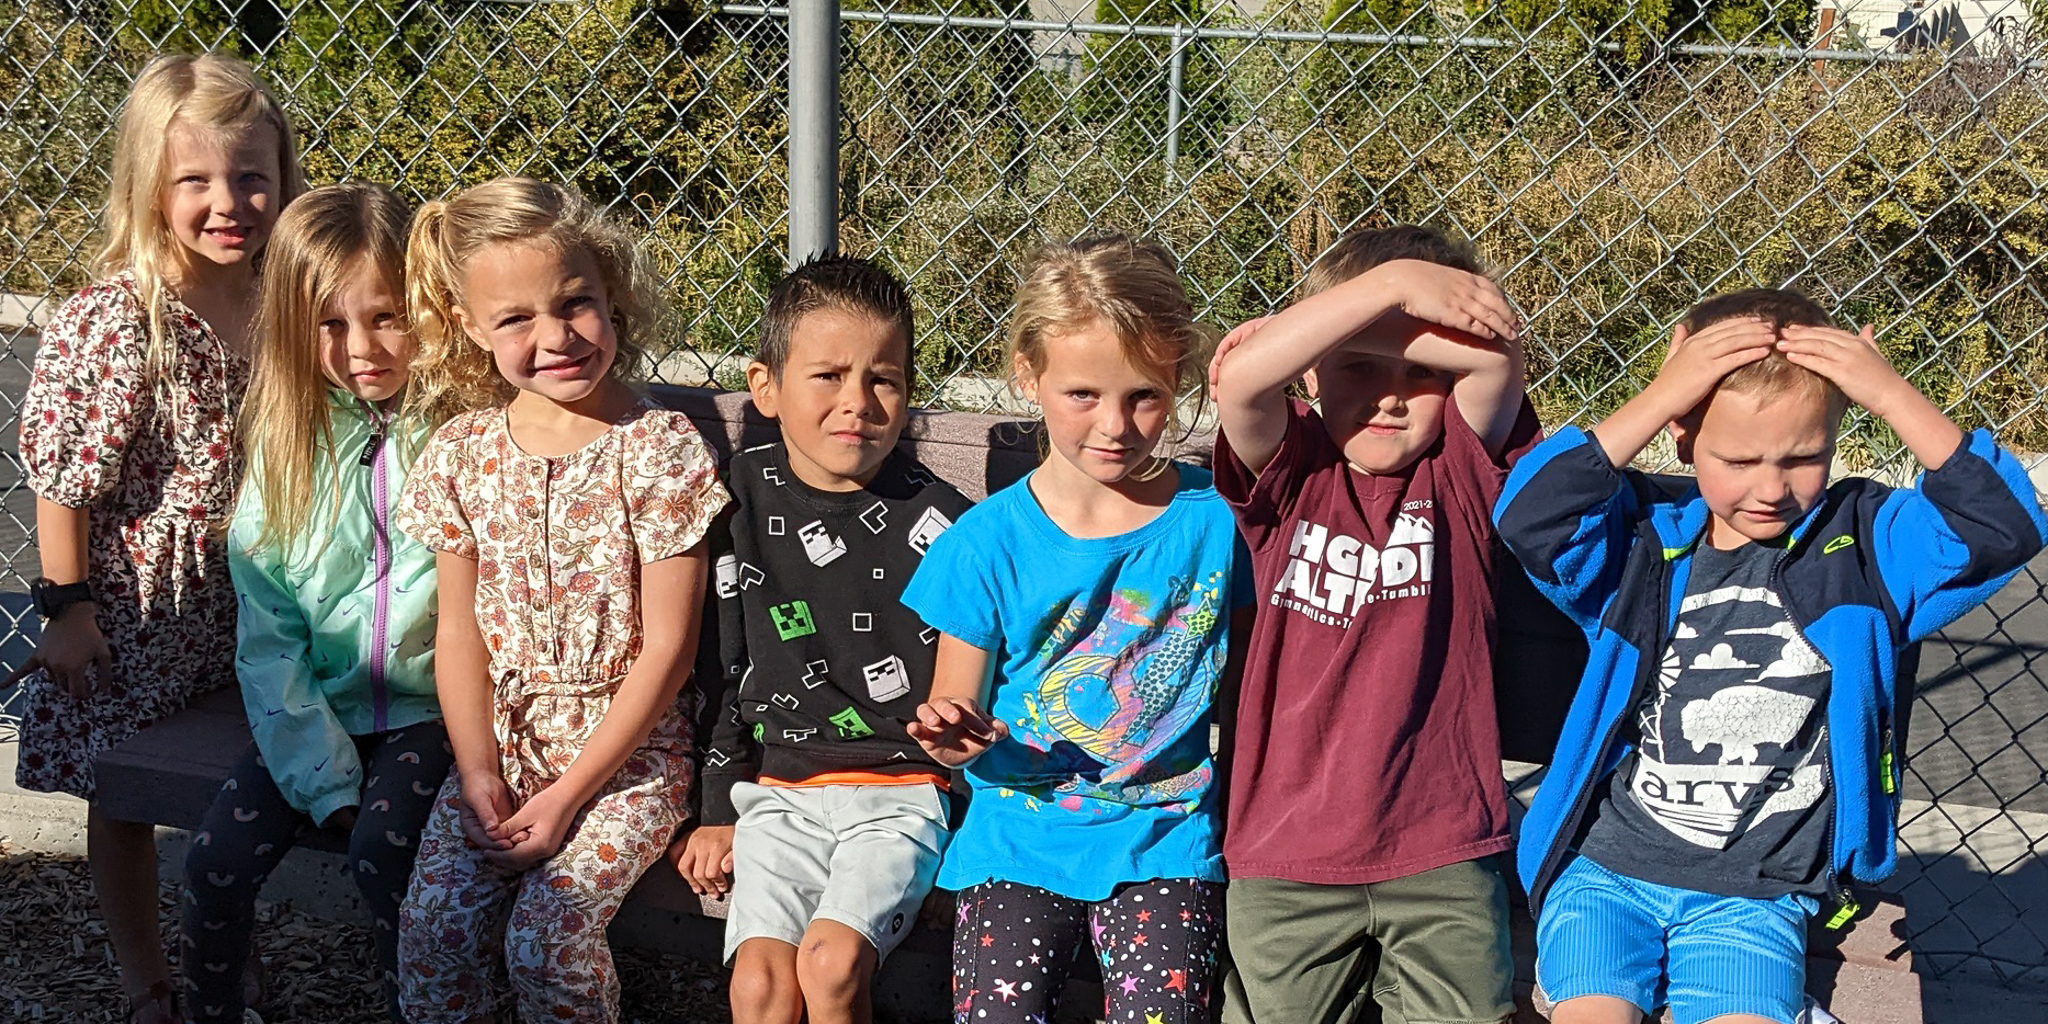 Kindergarten group during recess.